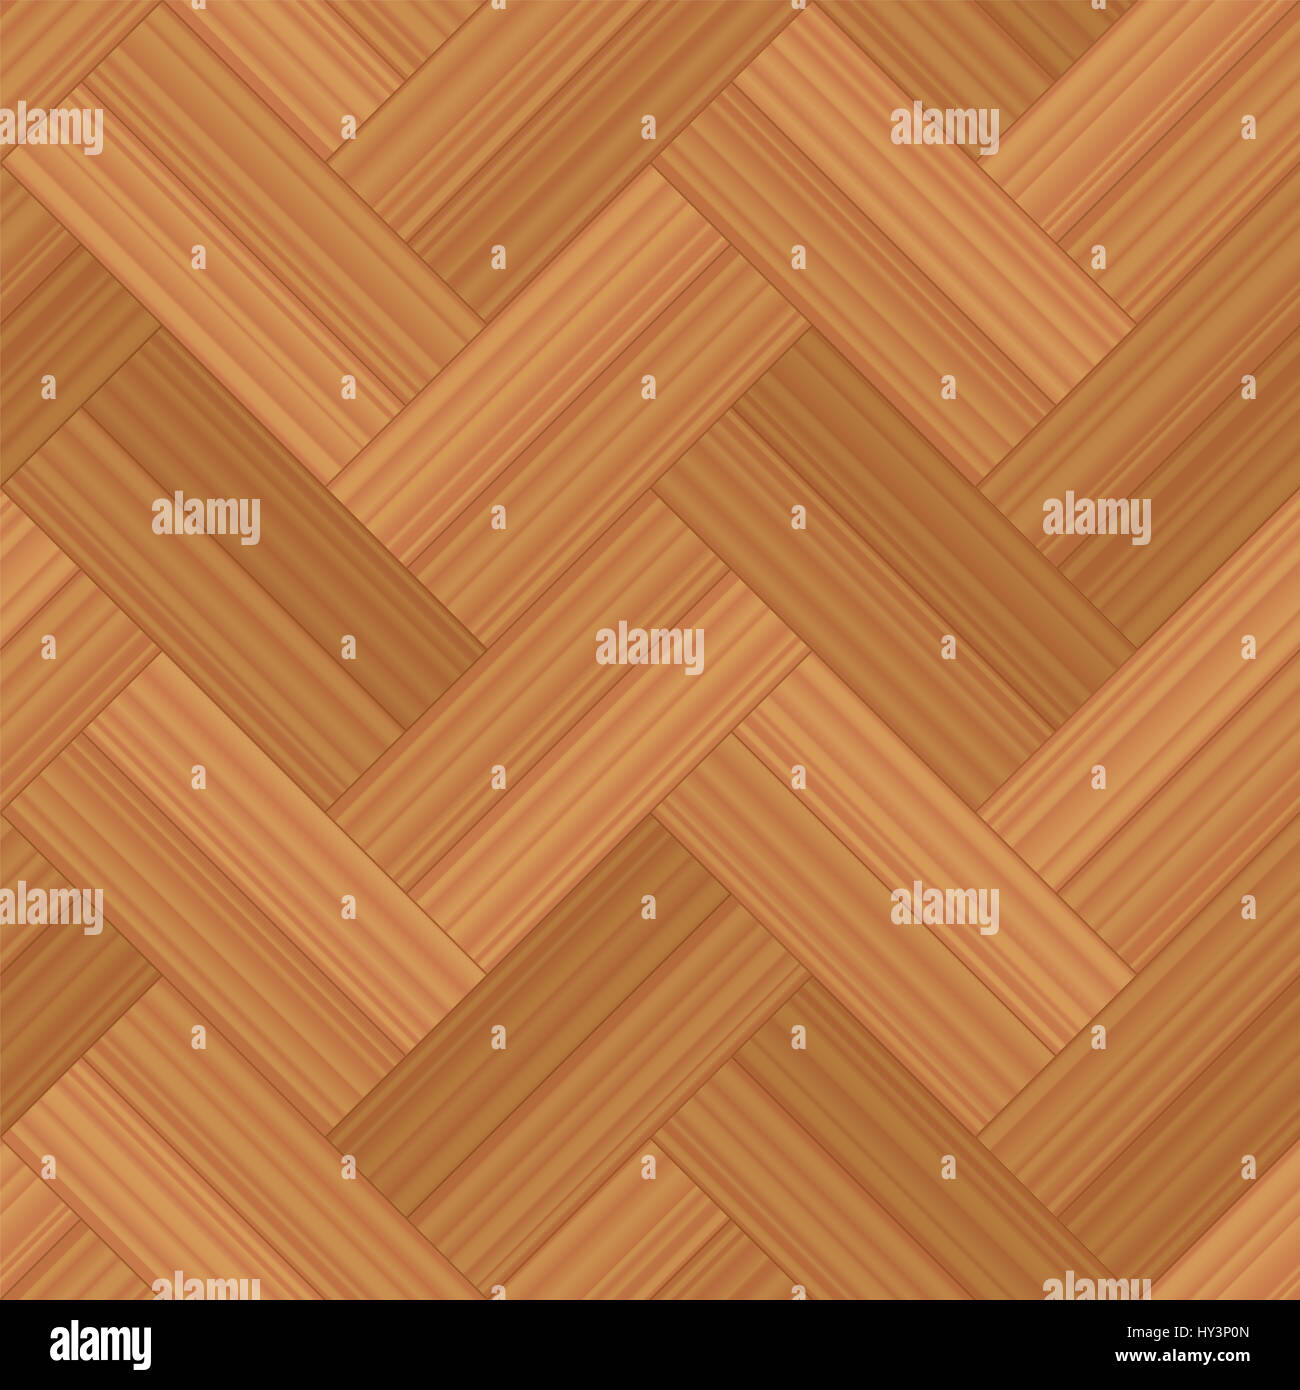 Parquet de espiga doble fila - Ilustración de un patrón típico de suelos de madera - perfecta extensible en todas las direcciones. Foto de stock